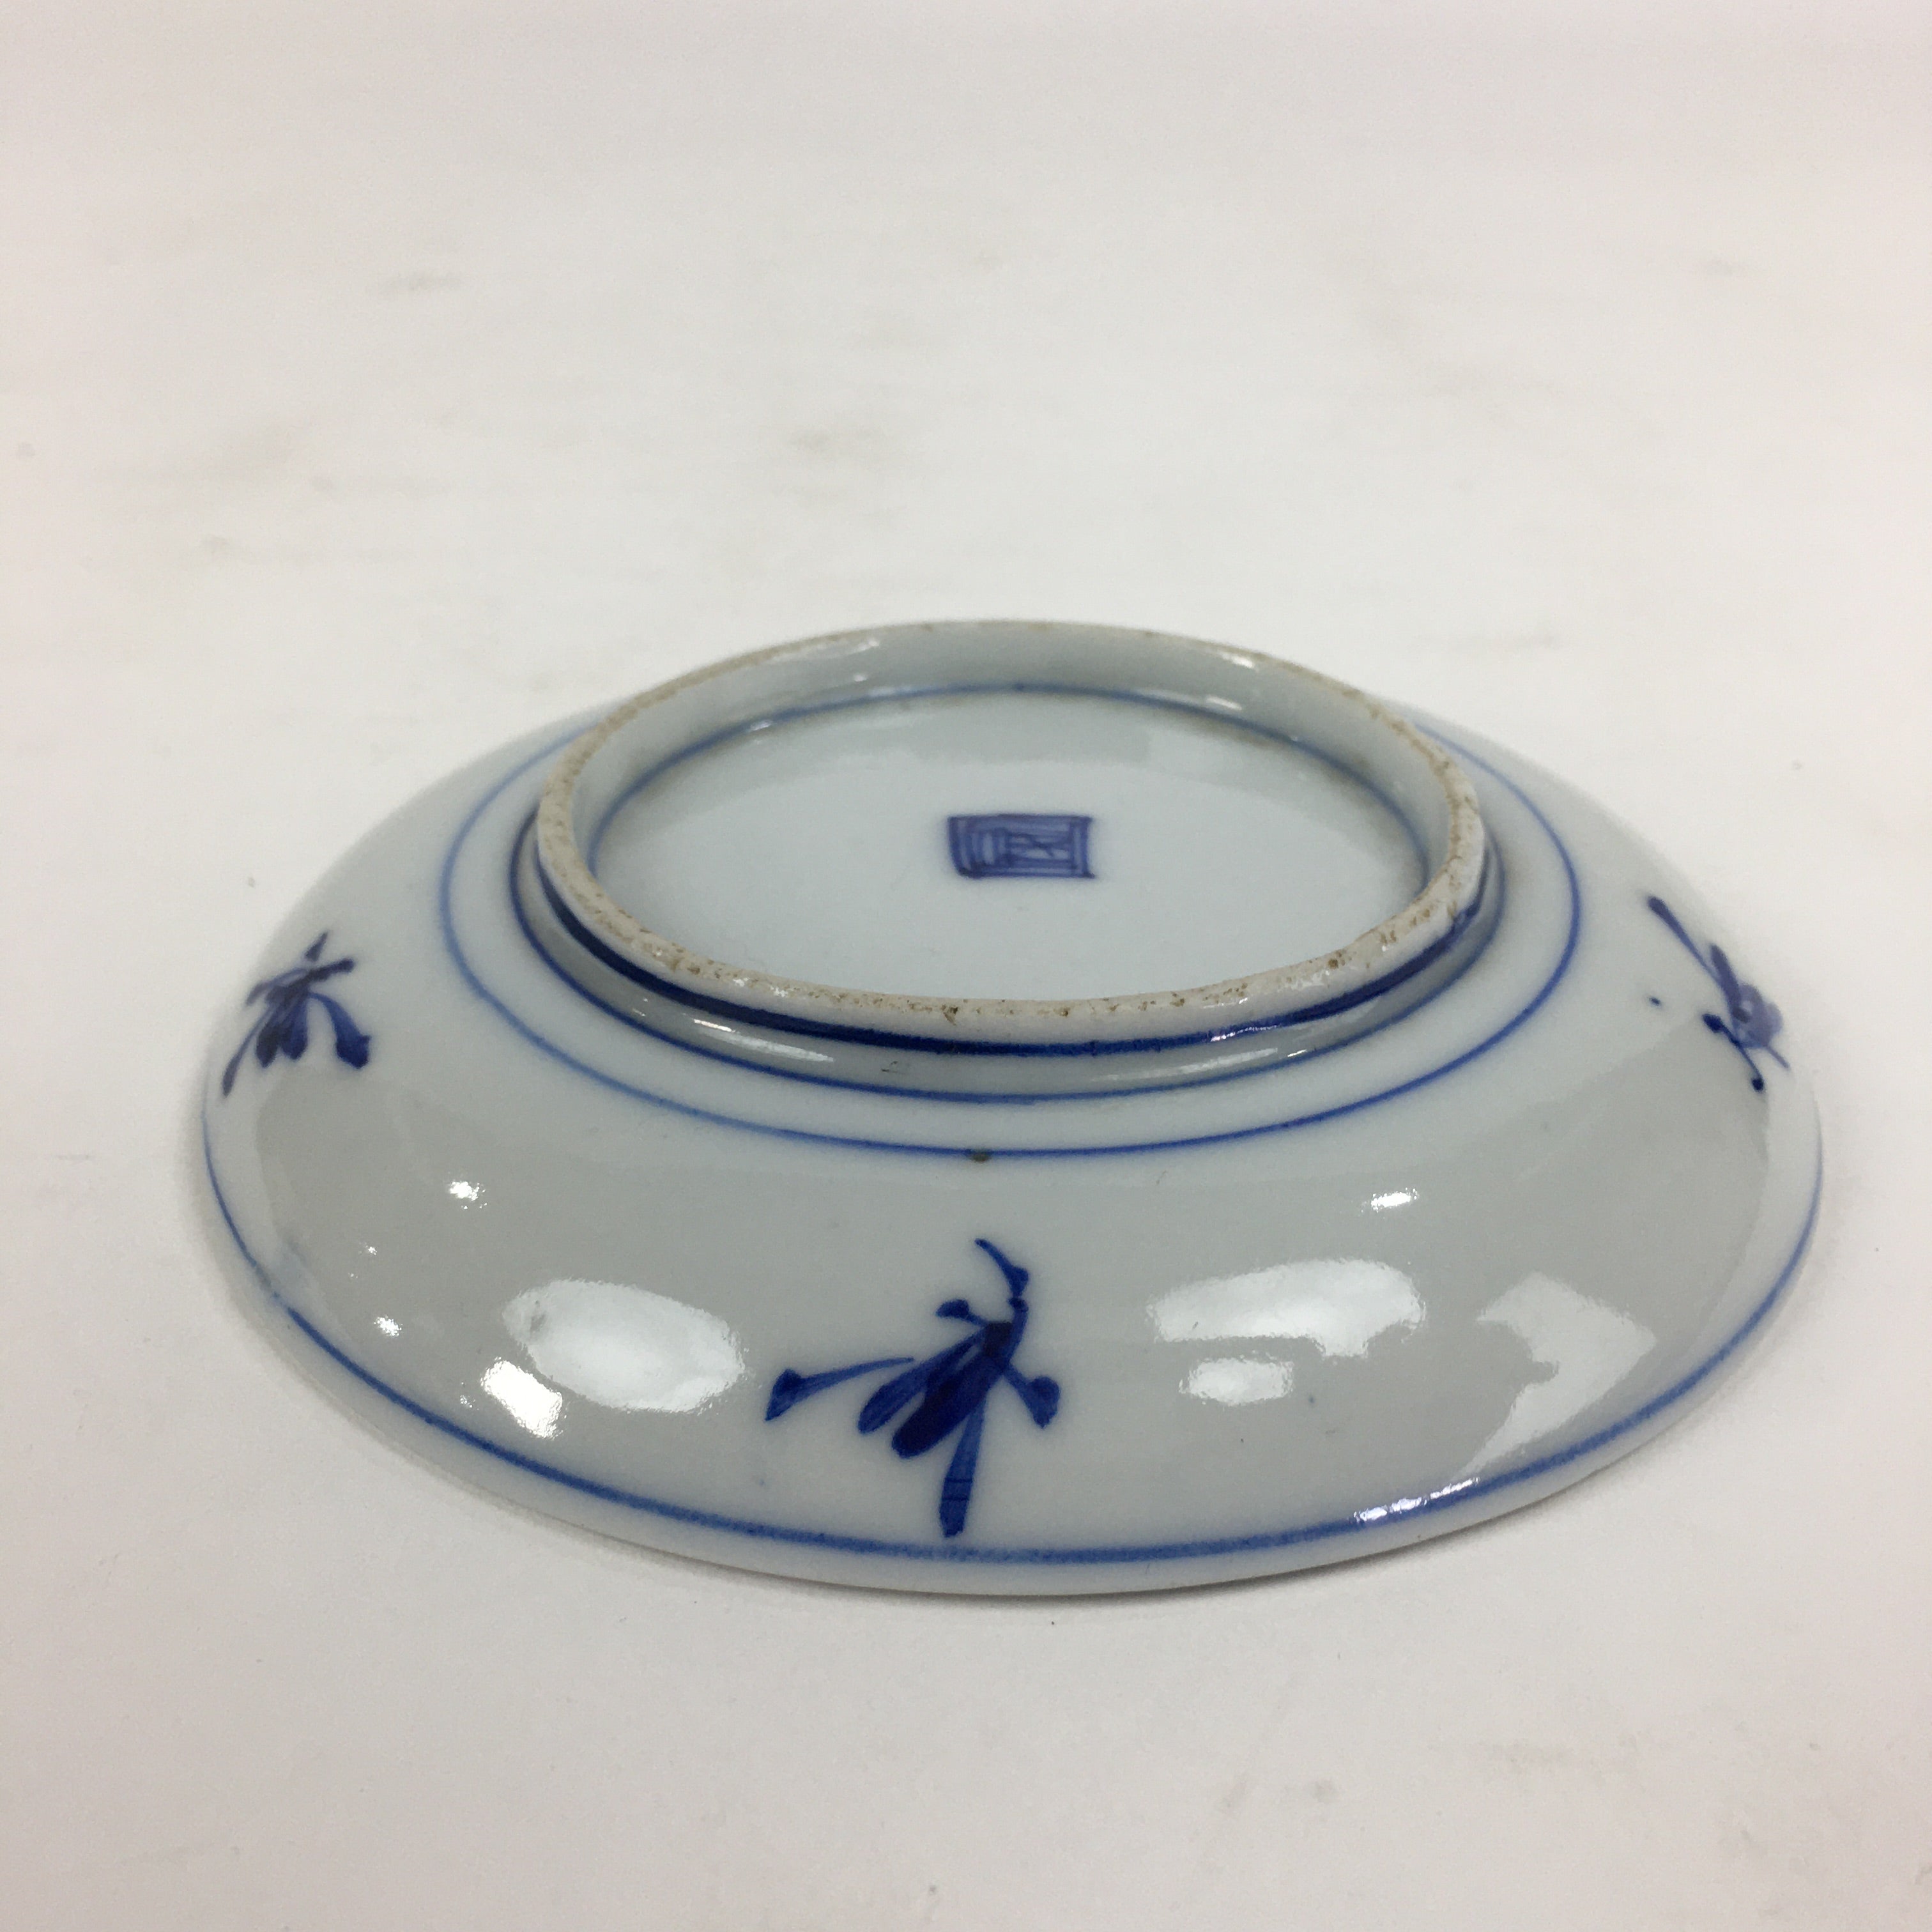 Japanese Porcelain Small Plate Kozara Vtg Blue Flower Dandelion Kozara PP803